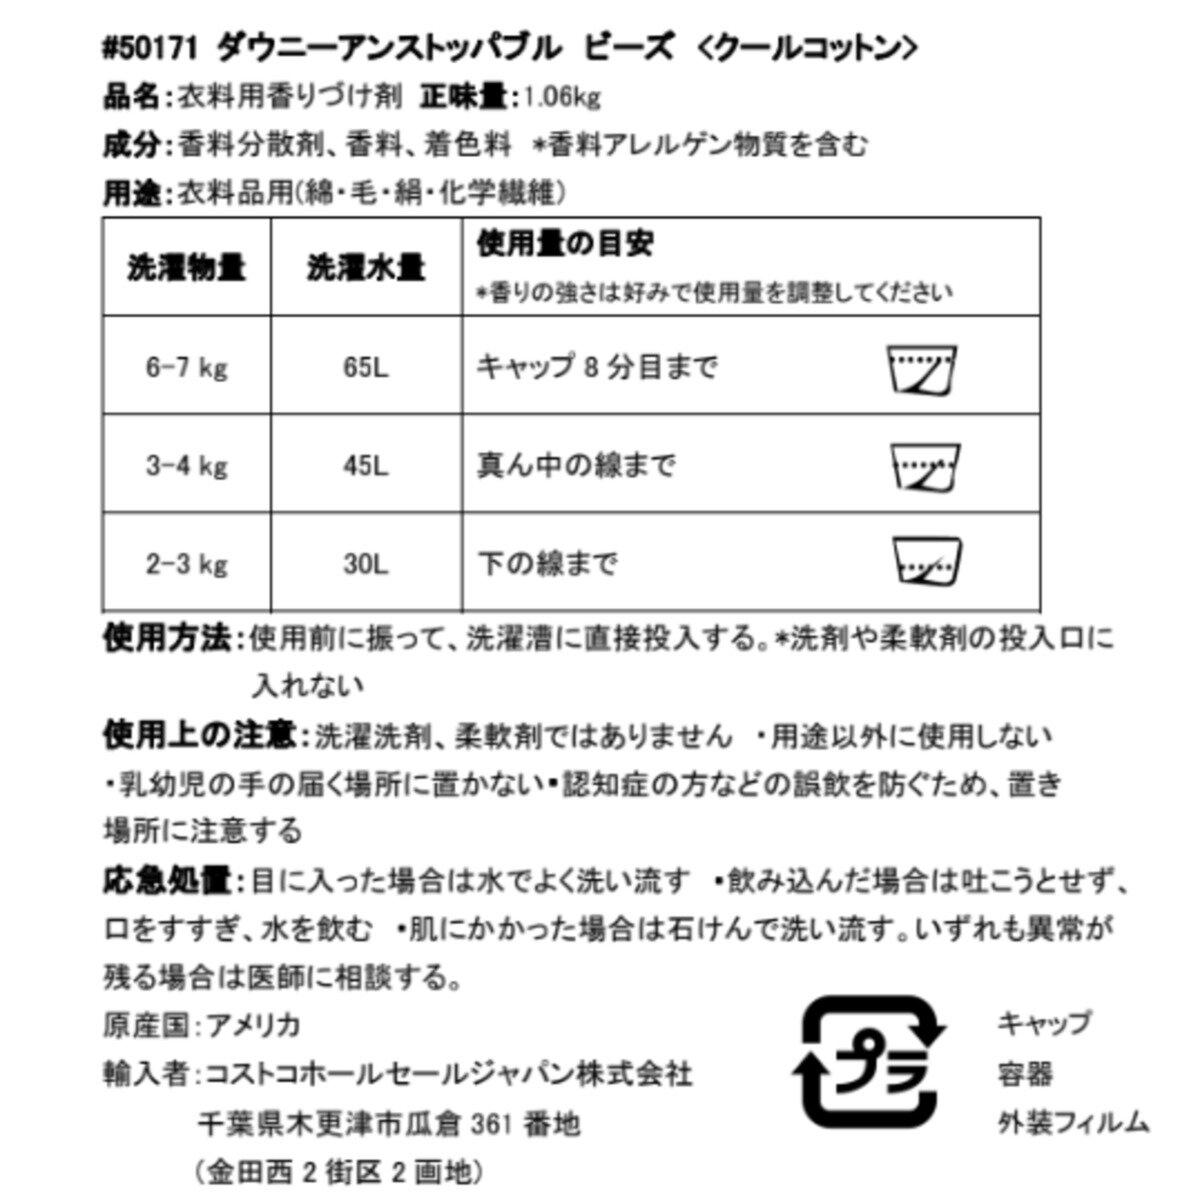 ダウニー クールコットン ビーズ 1.06kg | Costco Japan